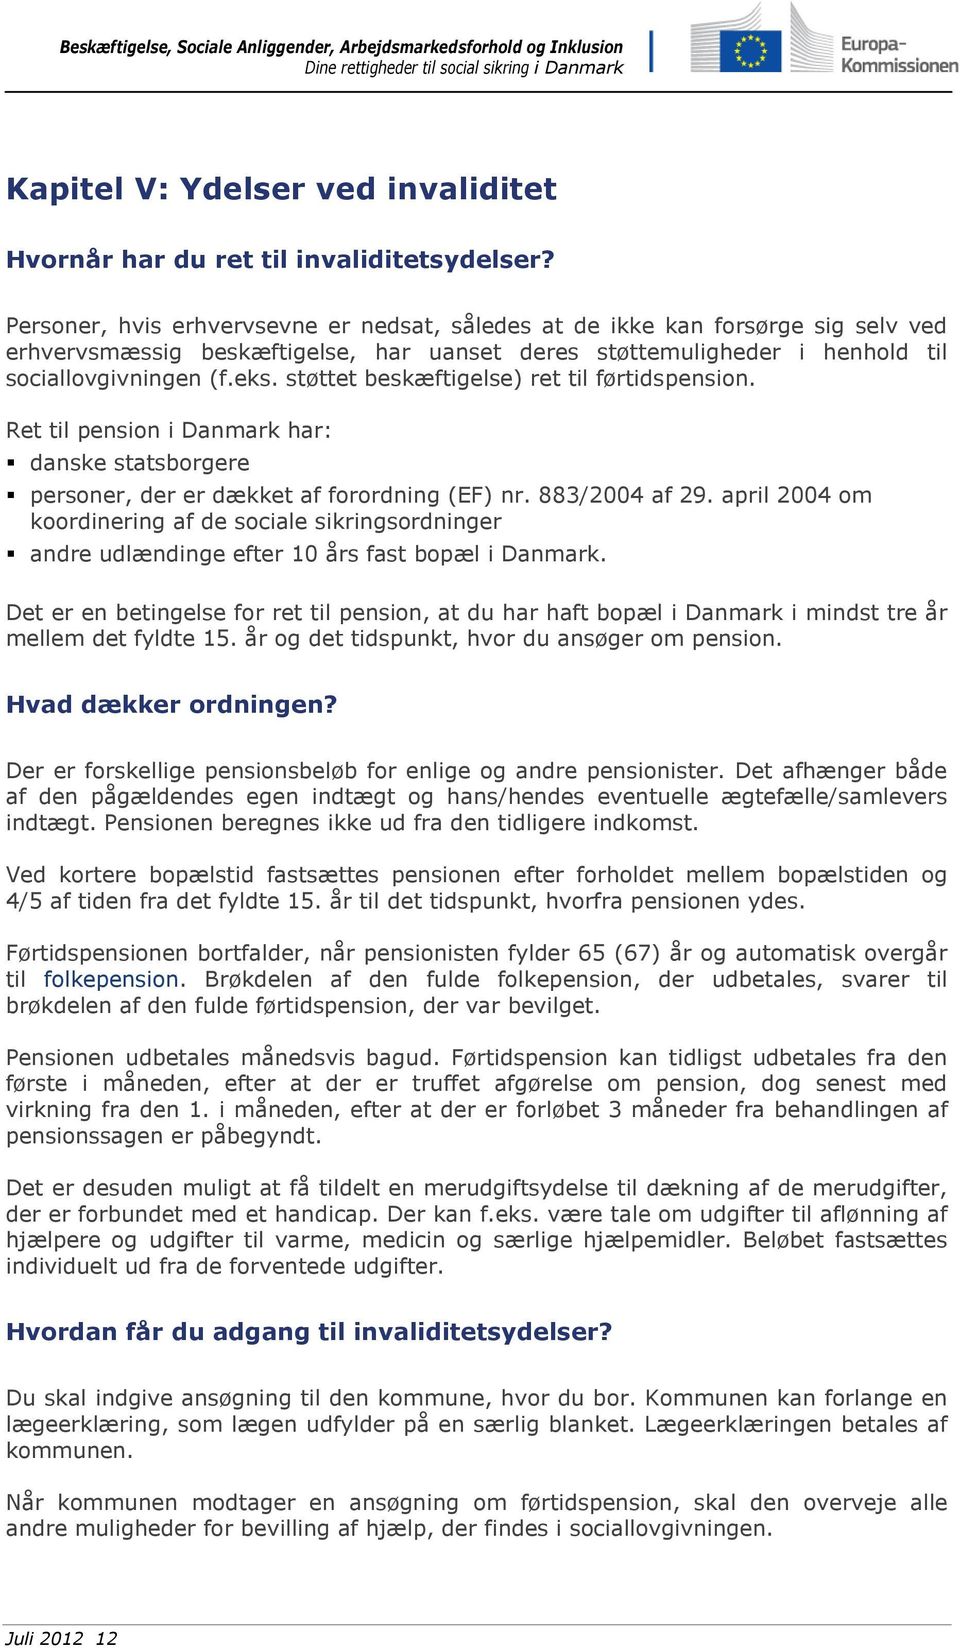 støttet beskæftigelse) ret til førtidspension. Ret til pension i Danmark har: danske statsborgere personer, der er dækket af forordning (EF) nr. 883/2004 af 29.